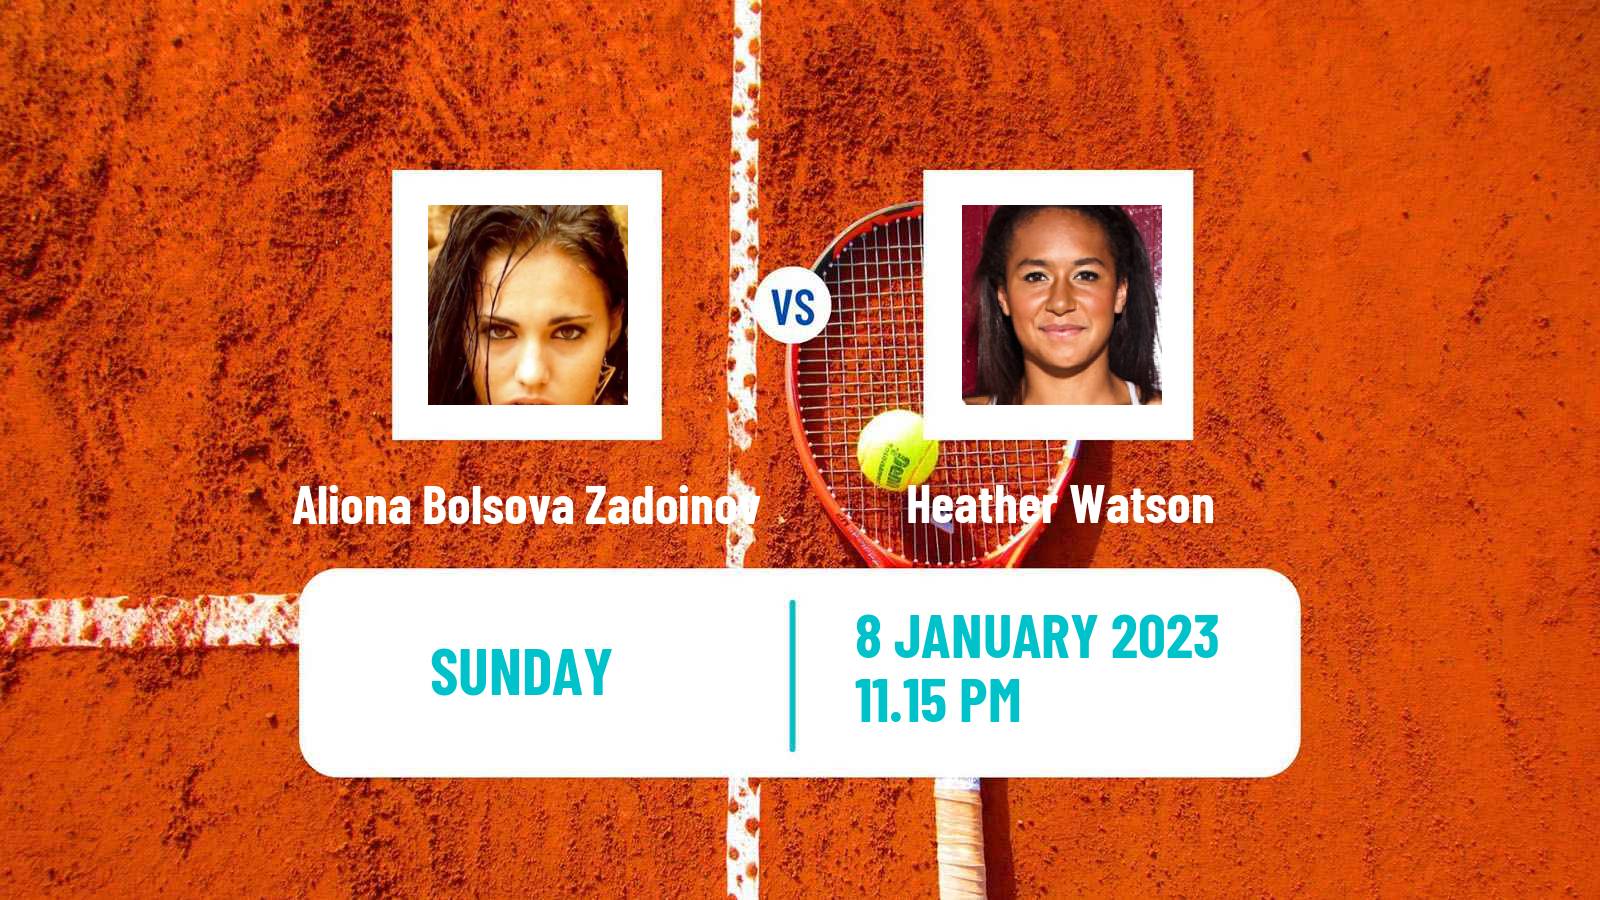 Tennis WTA Australian Open Aliona Bolsova Zadoinov - Heather Watson